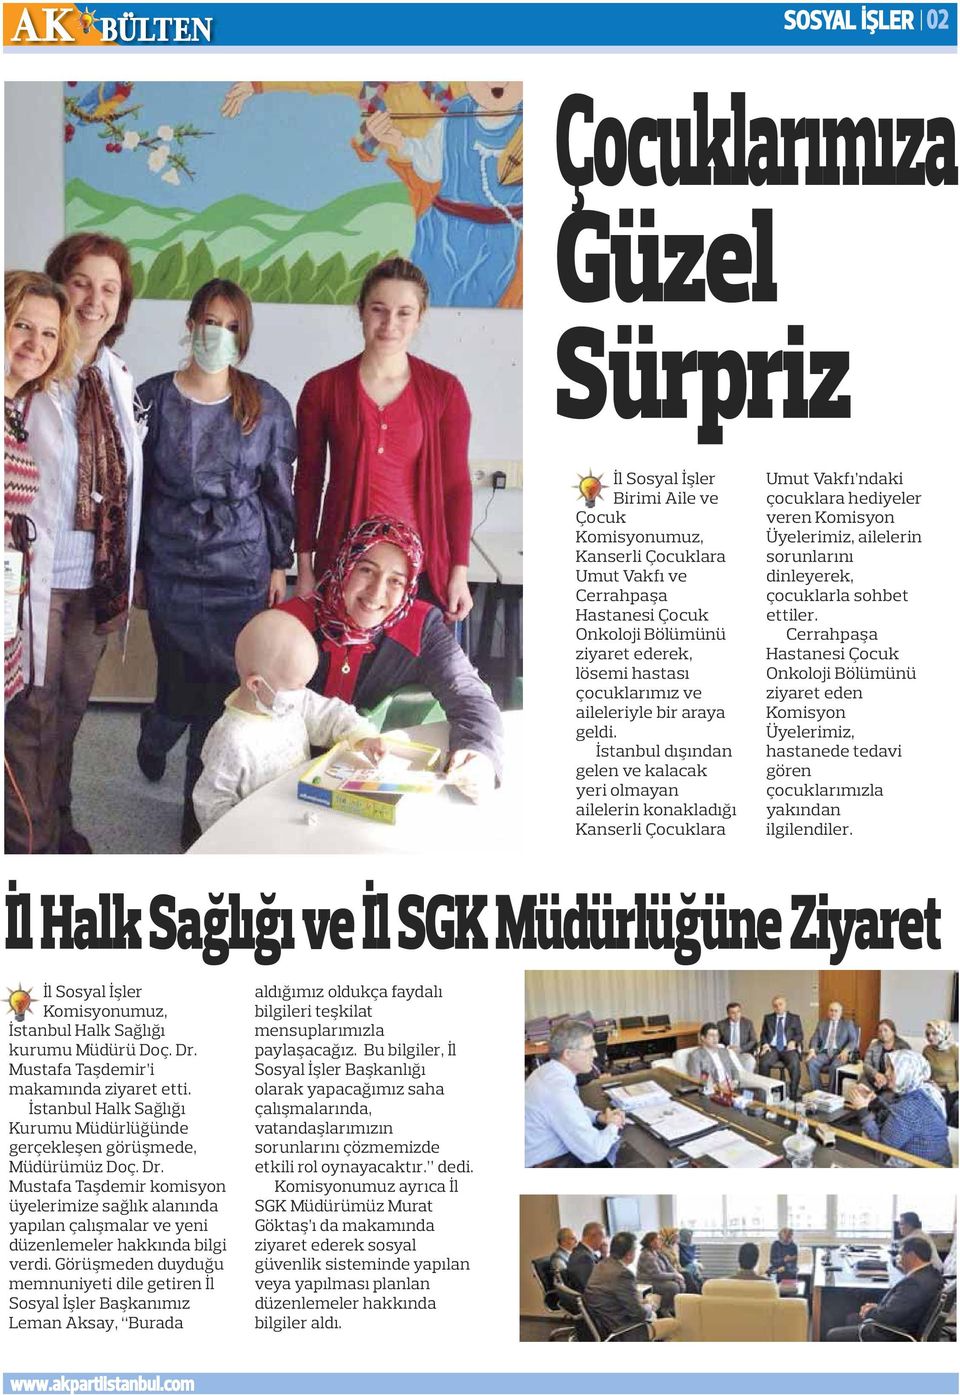 İstanbul dışından gelen ve kalacak yeri olmayan ailelerin konakladığı Kanserli Çocuklara Umut Vakfı ndaki çocuklara hediyeler veren Komisyon Üyelerimiz, ailelerin sorunlarını dinleyerek, çocuklarla